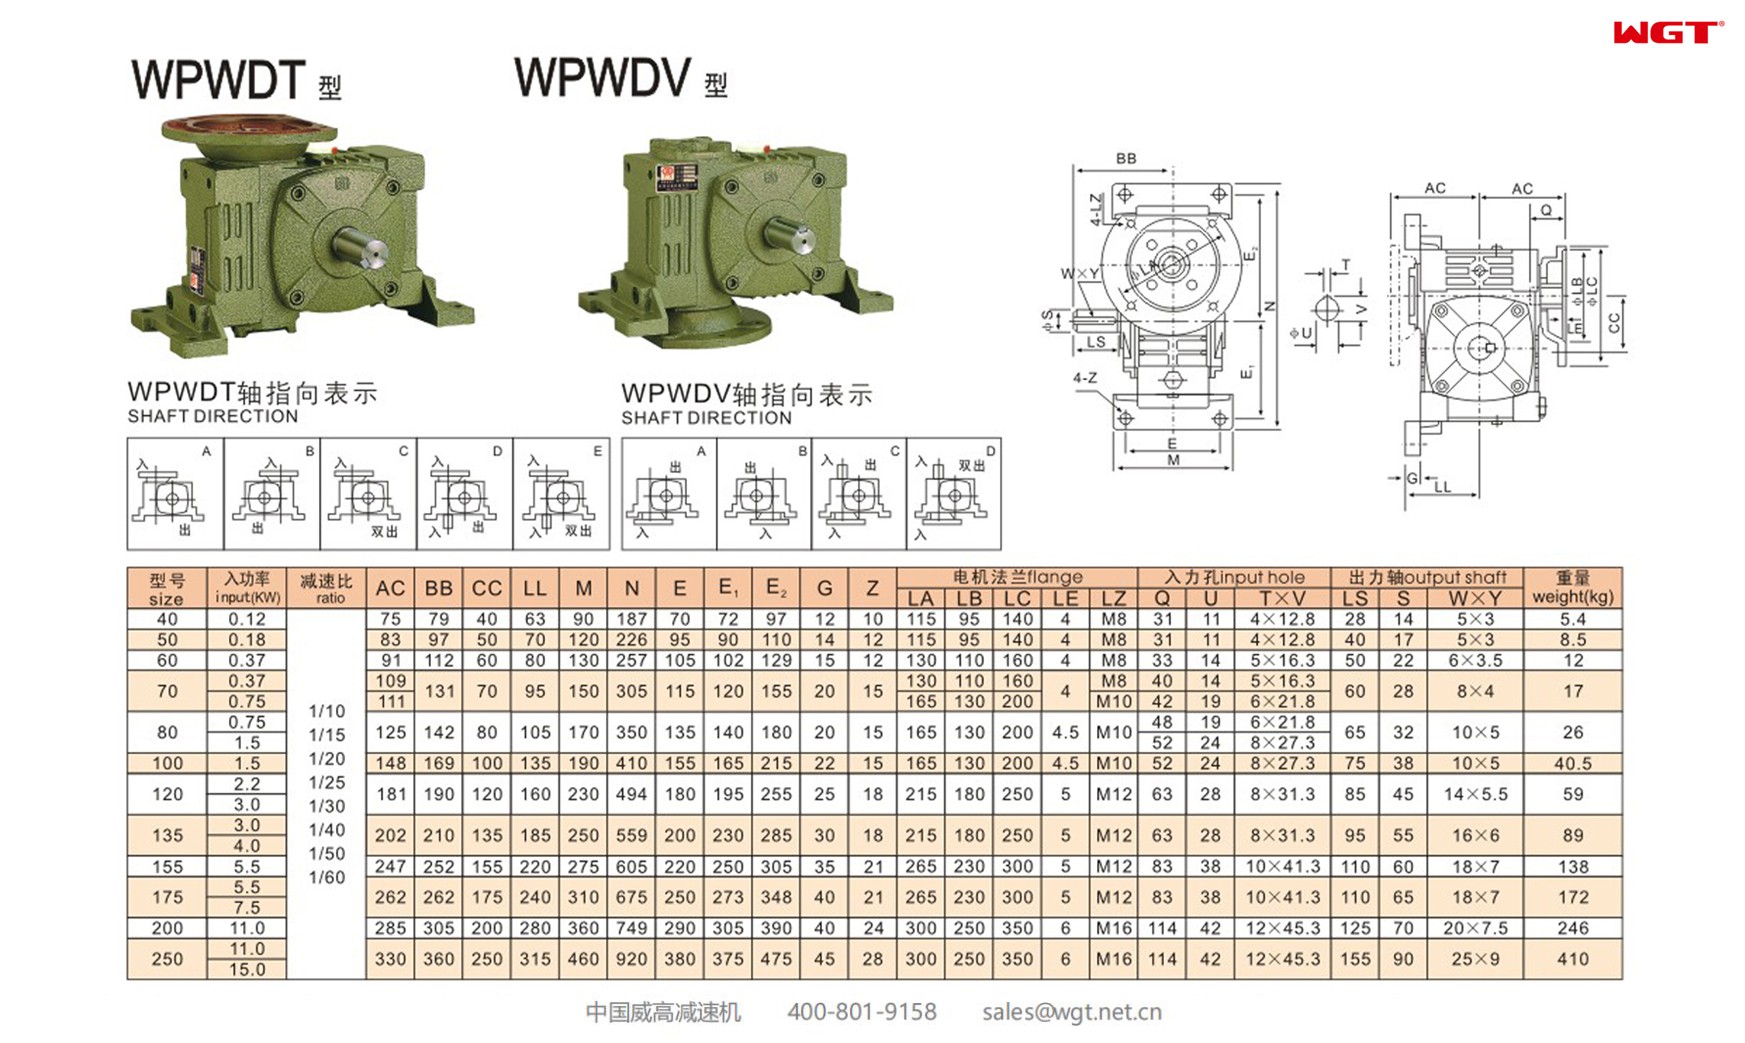 WPWDT80 worm gear reducer universal speed reducer